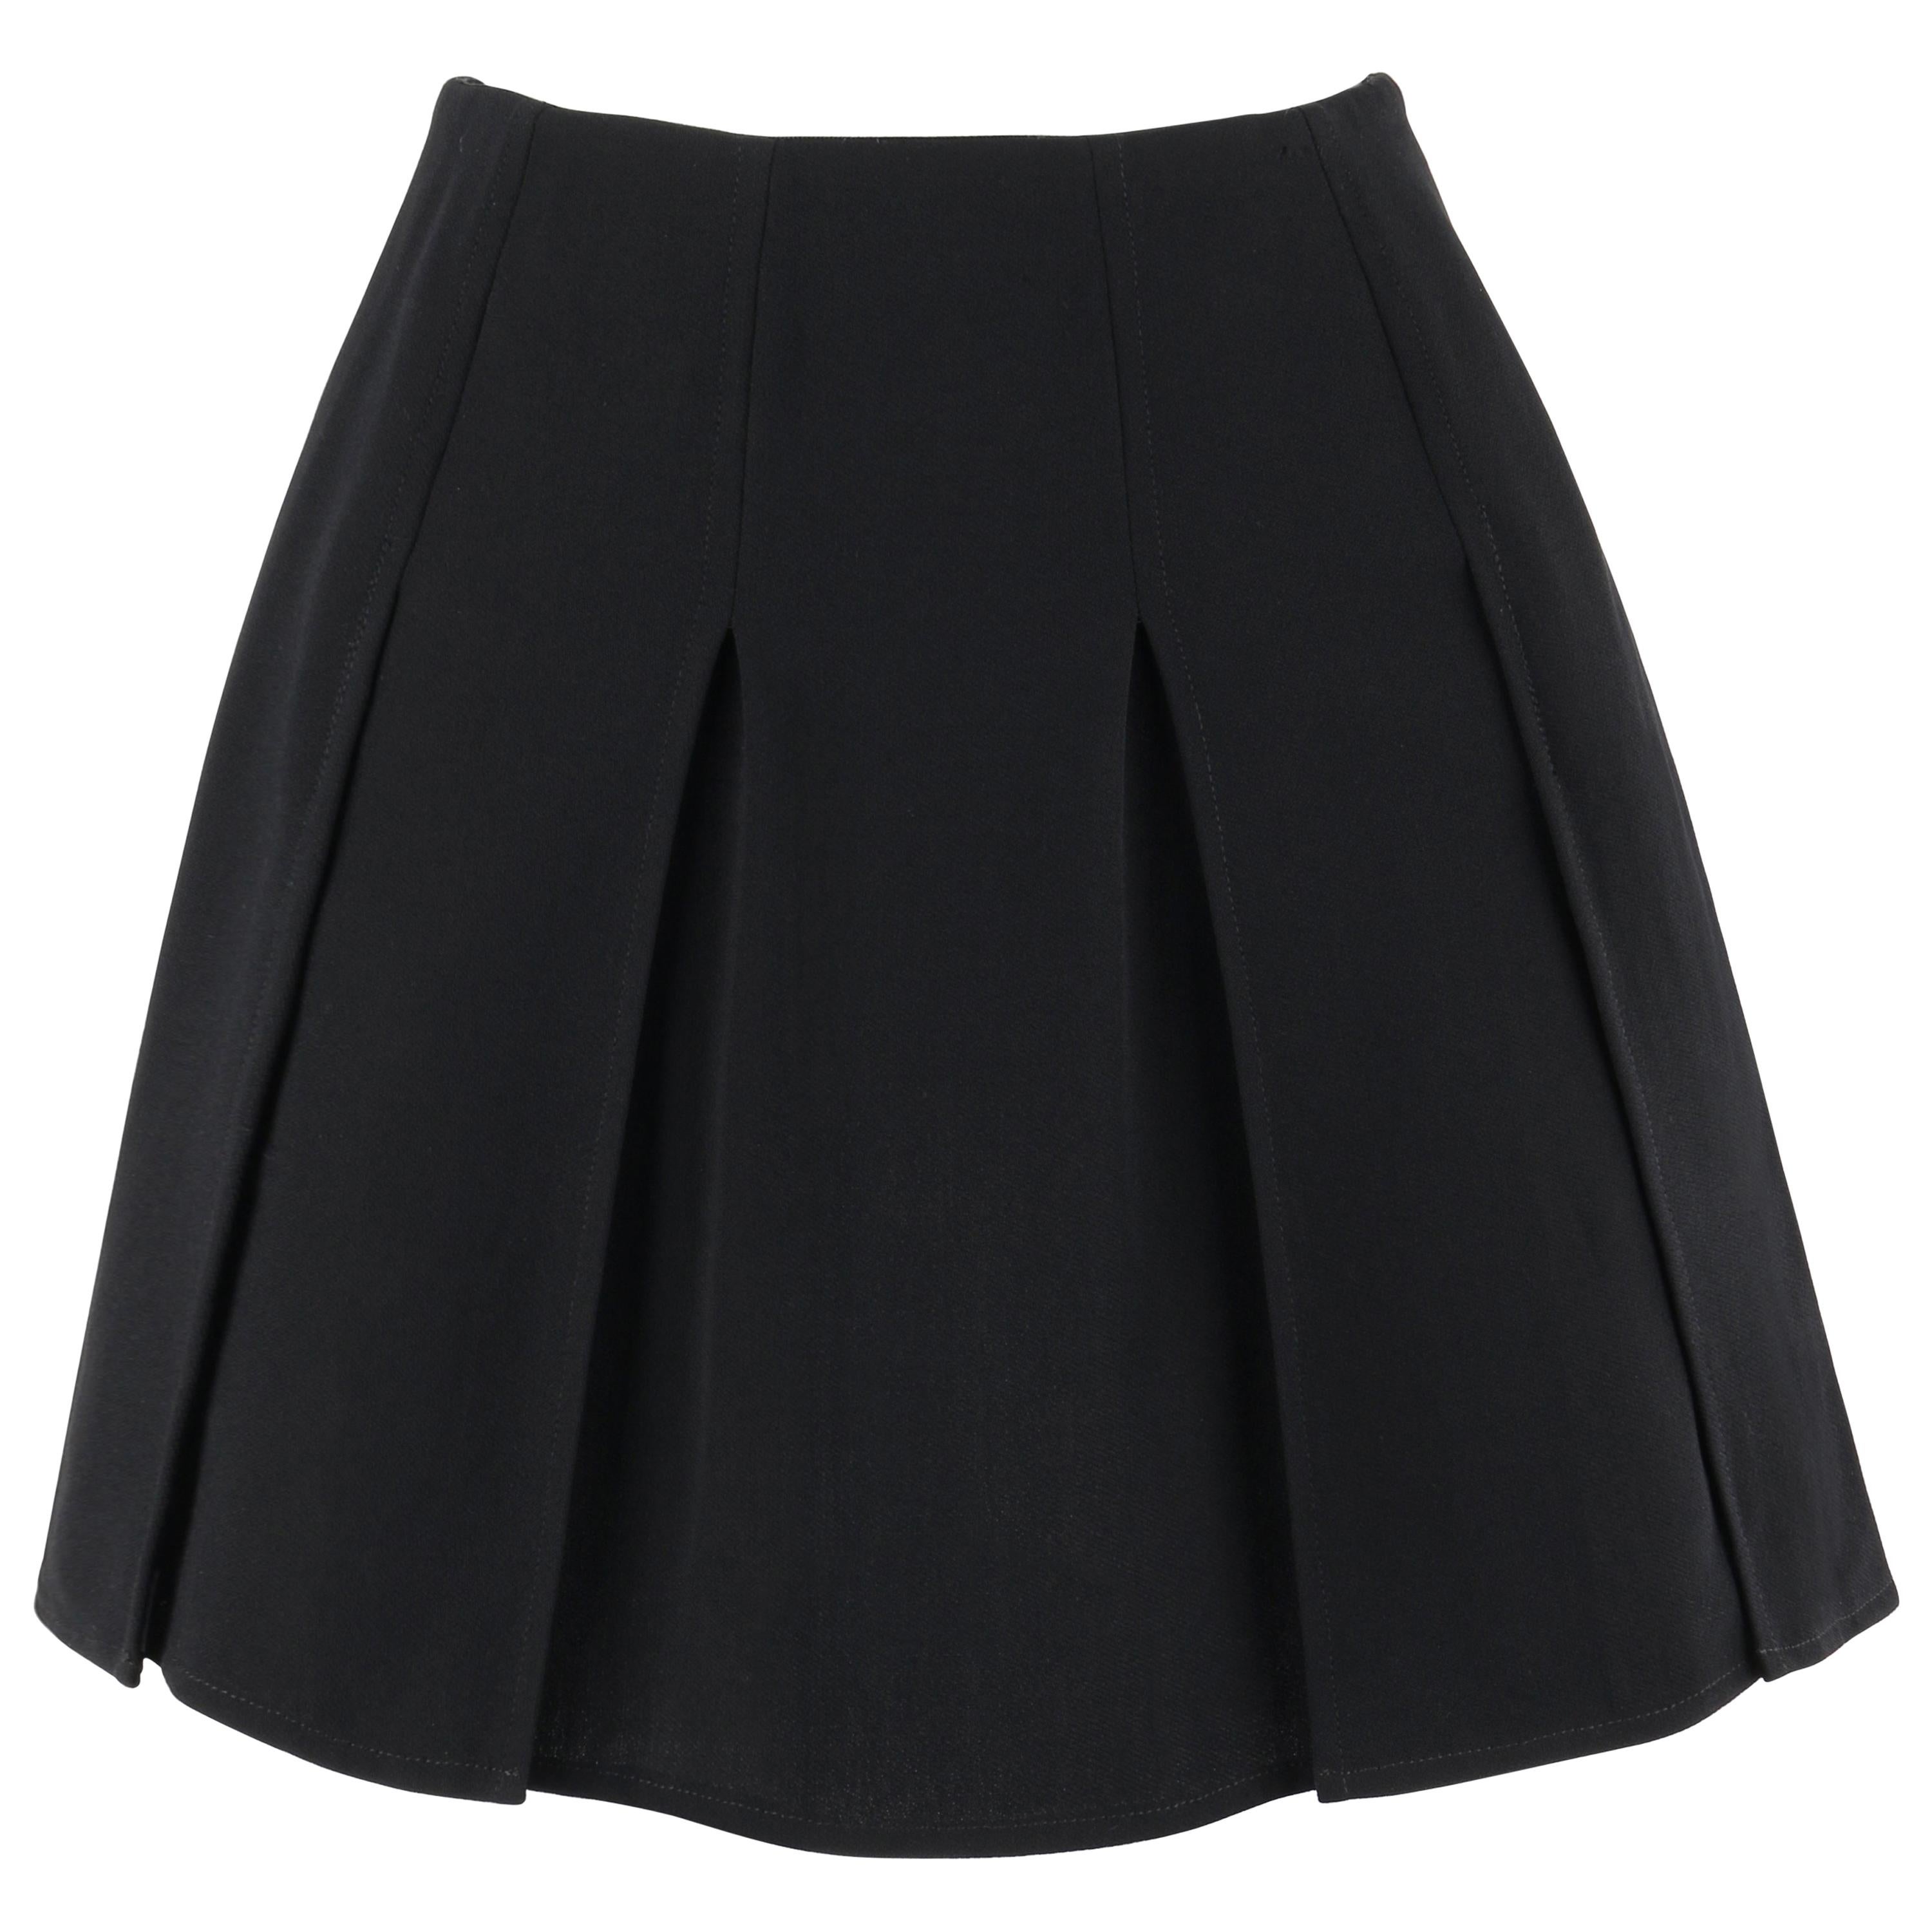 Tweed mini skirt